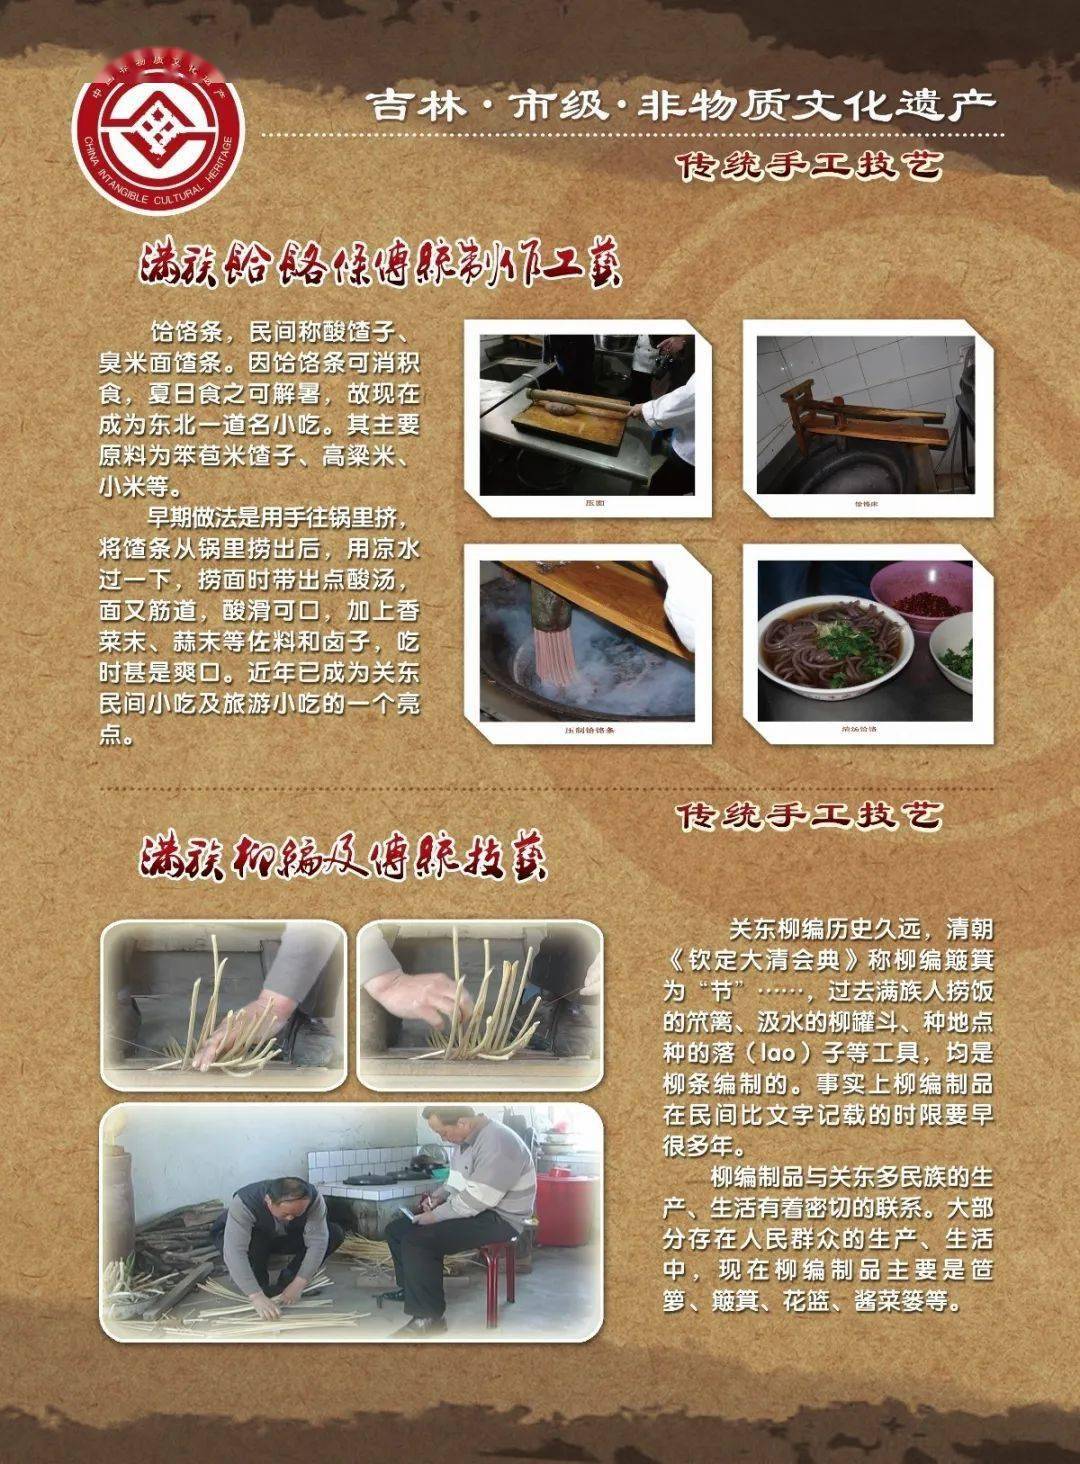 线上展览613中国文化遗产日主题活动满韵遗风吉林满族非物质文化遗产